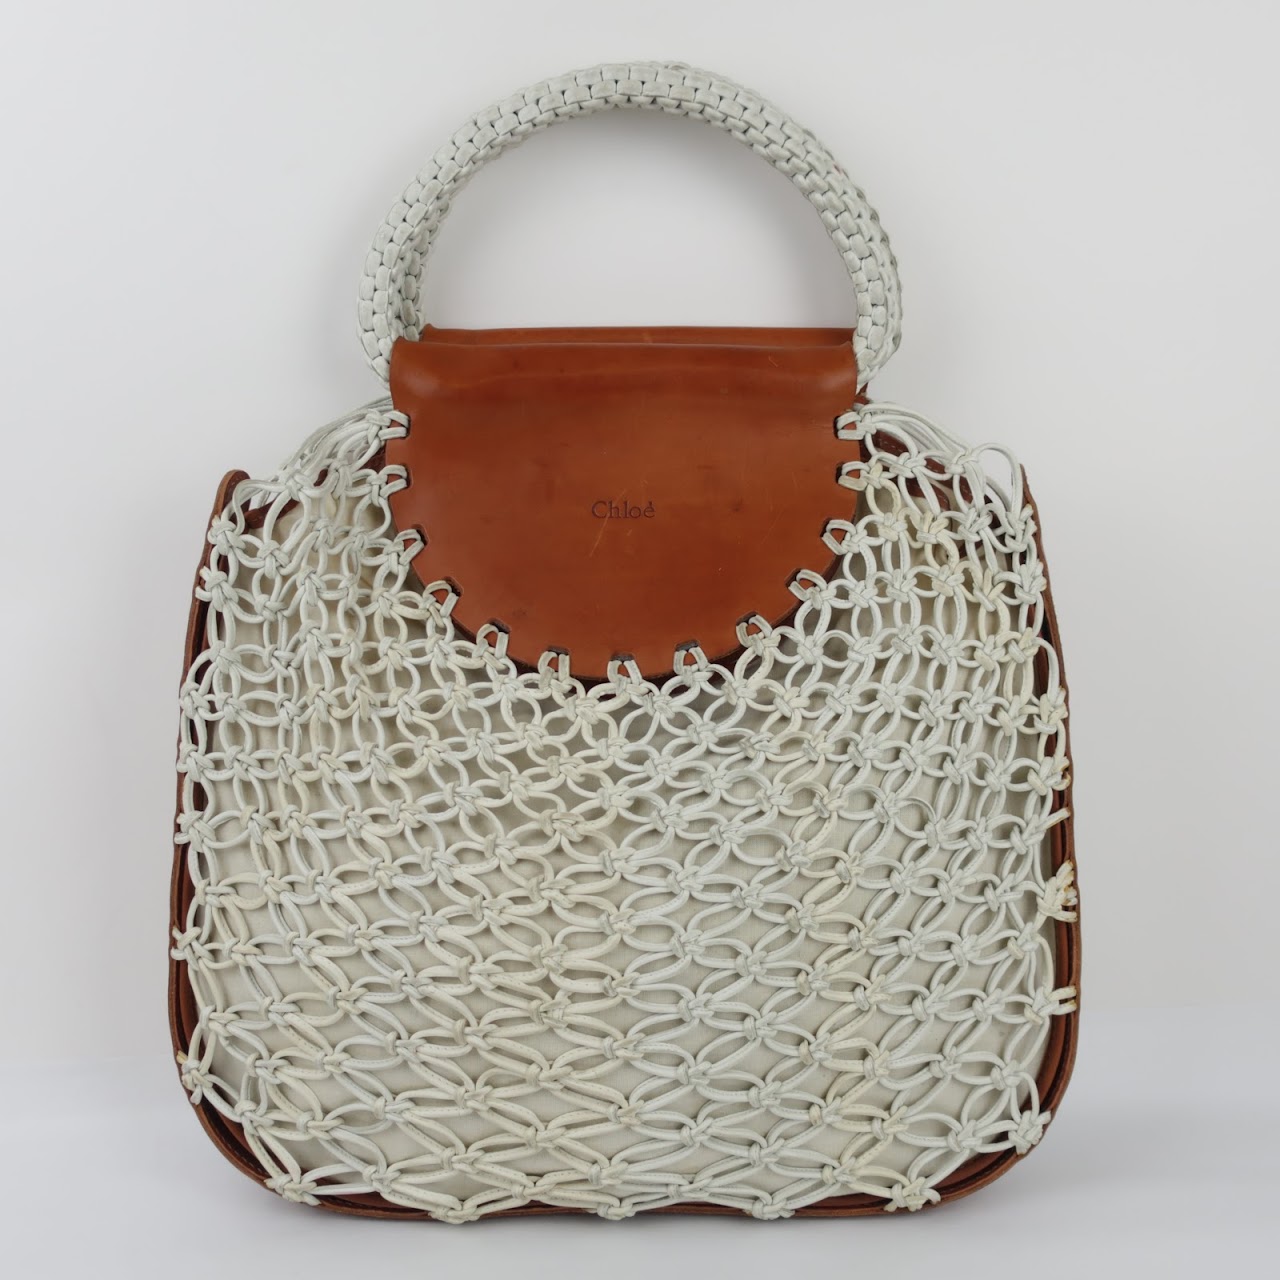 Chloé Leather Macrame Bag